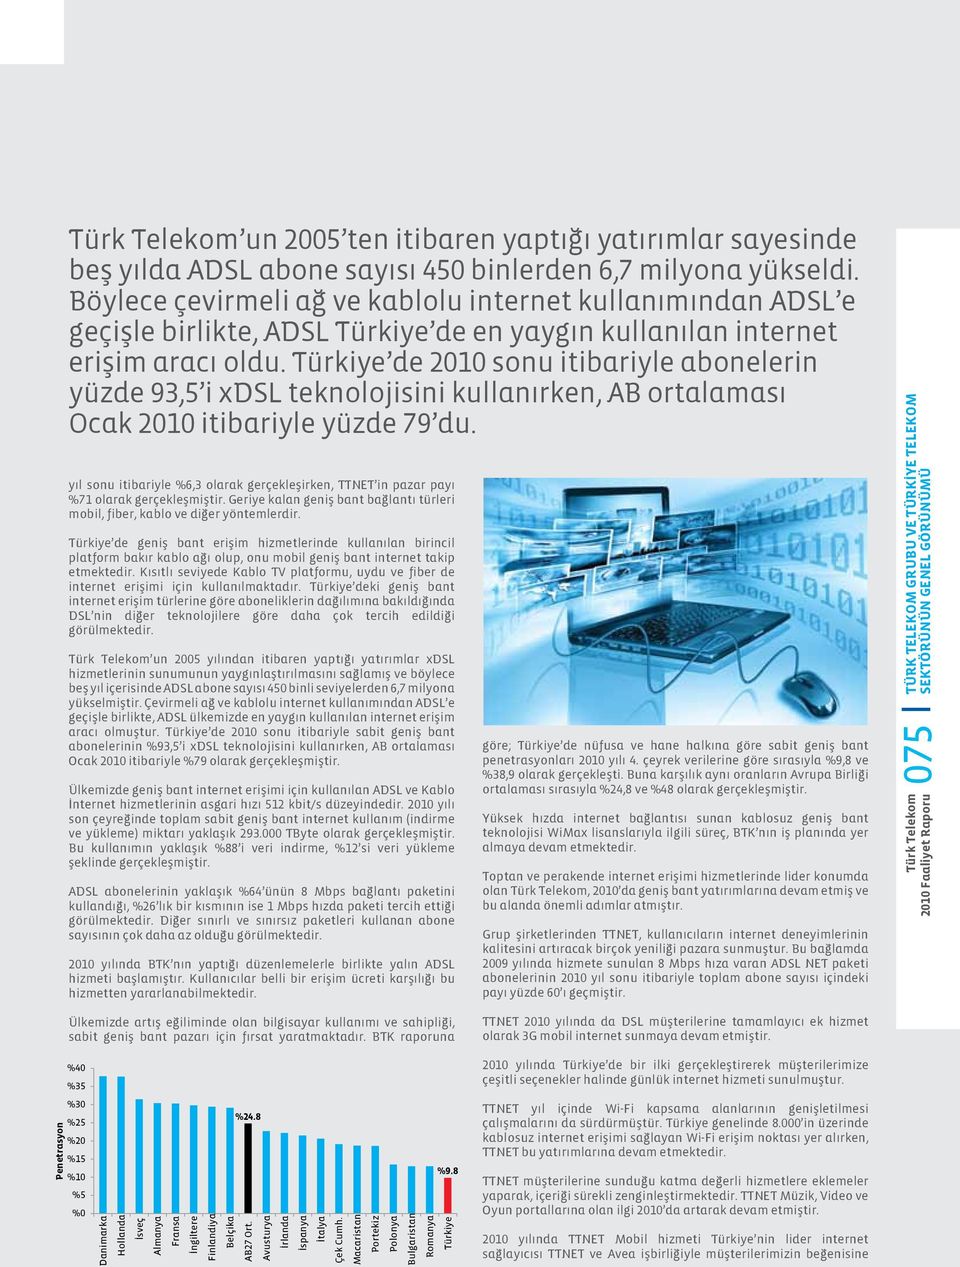 Türkiye de 2010 sonu itibariyle abonelerin yüzde 93,5 i xdsl teknolojisini kullanırken, AB ortalaması Ocak 2010 itibariyle yüzde 79 du.